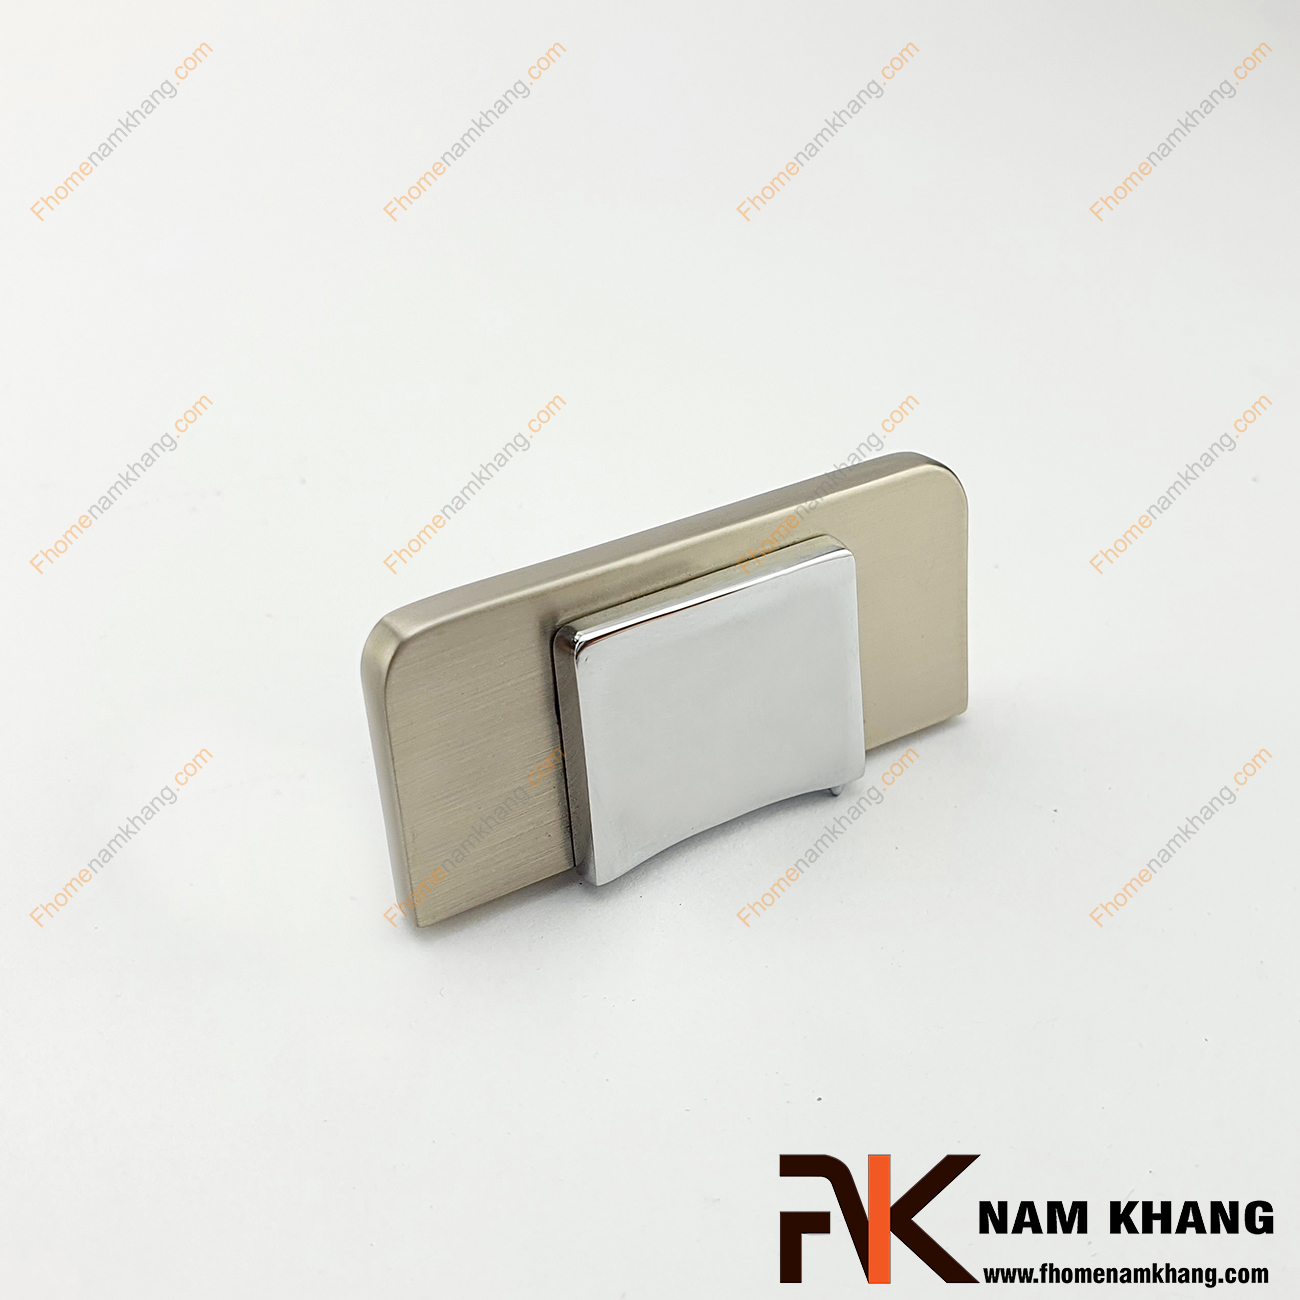 Núm cửa tủ hiện đại cao cấp màu ghi NK437-GB là một mẫu phụ kiện dạng thanh dành cho cánh cửa tủ độc đáo.